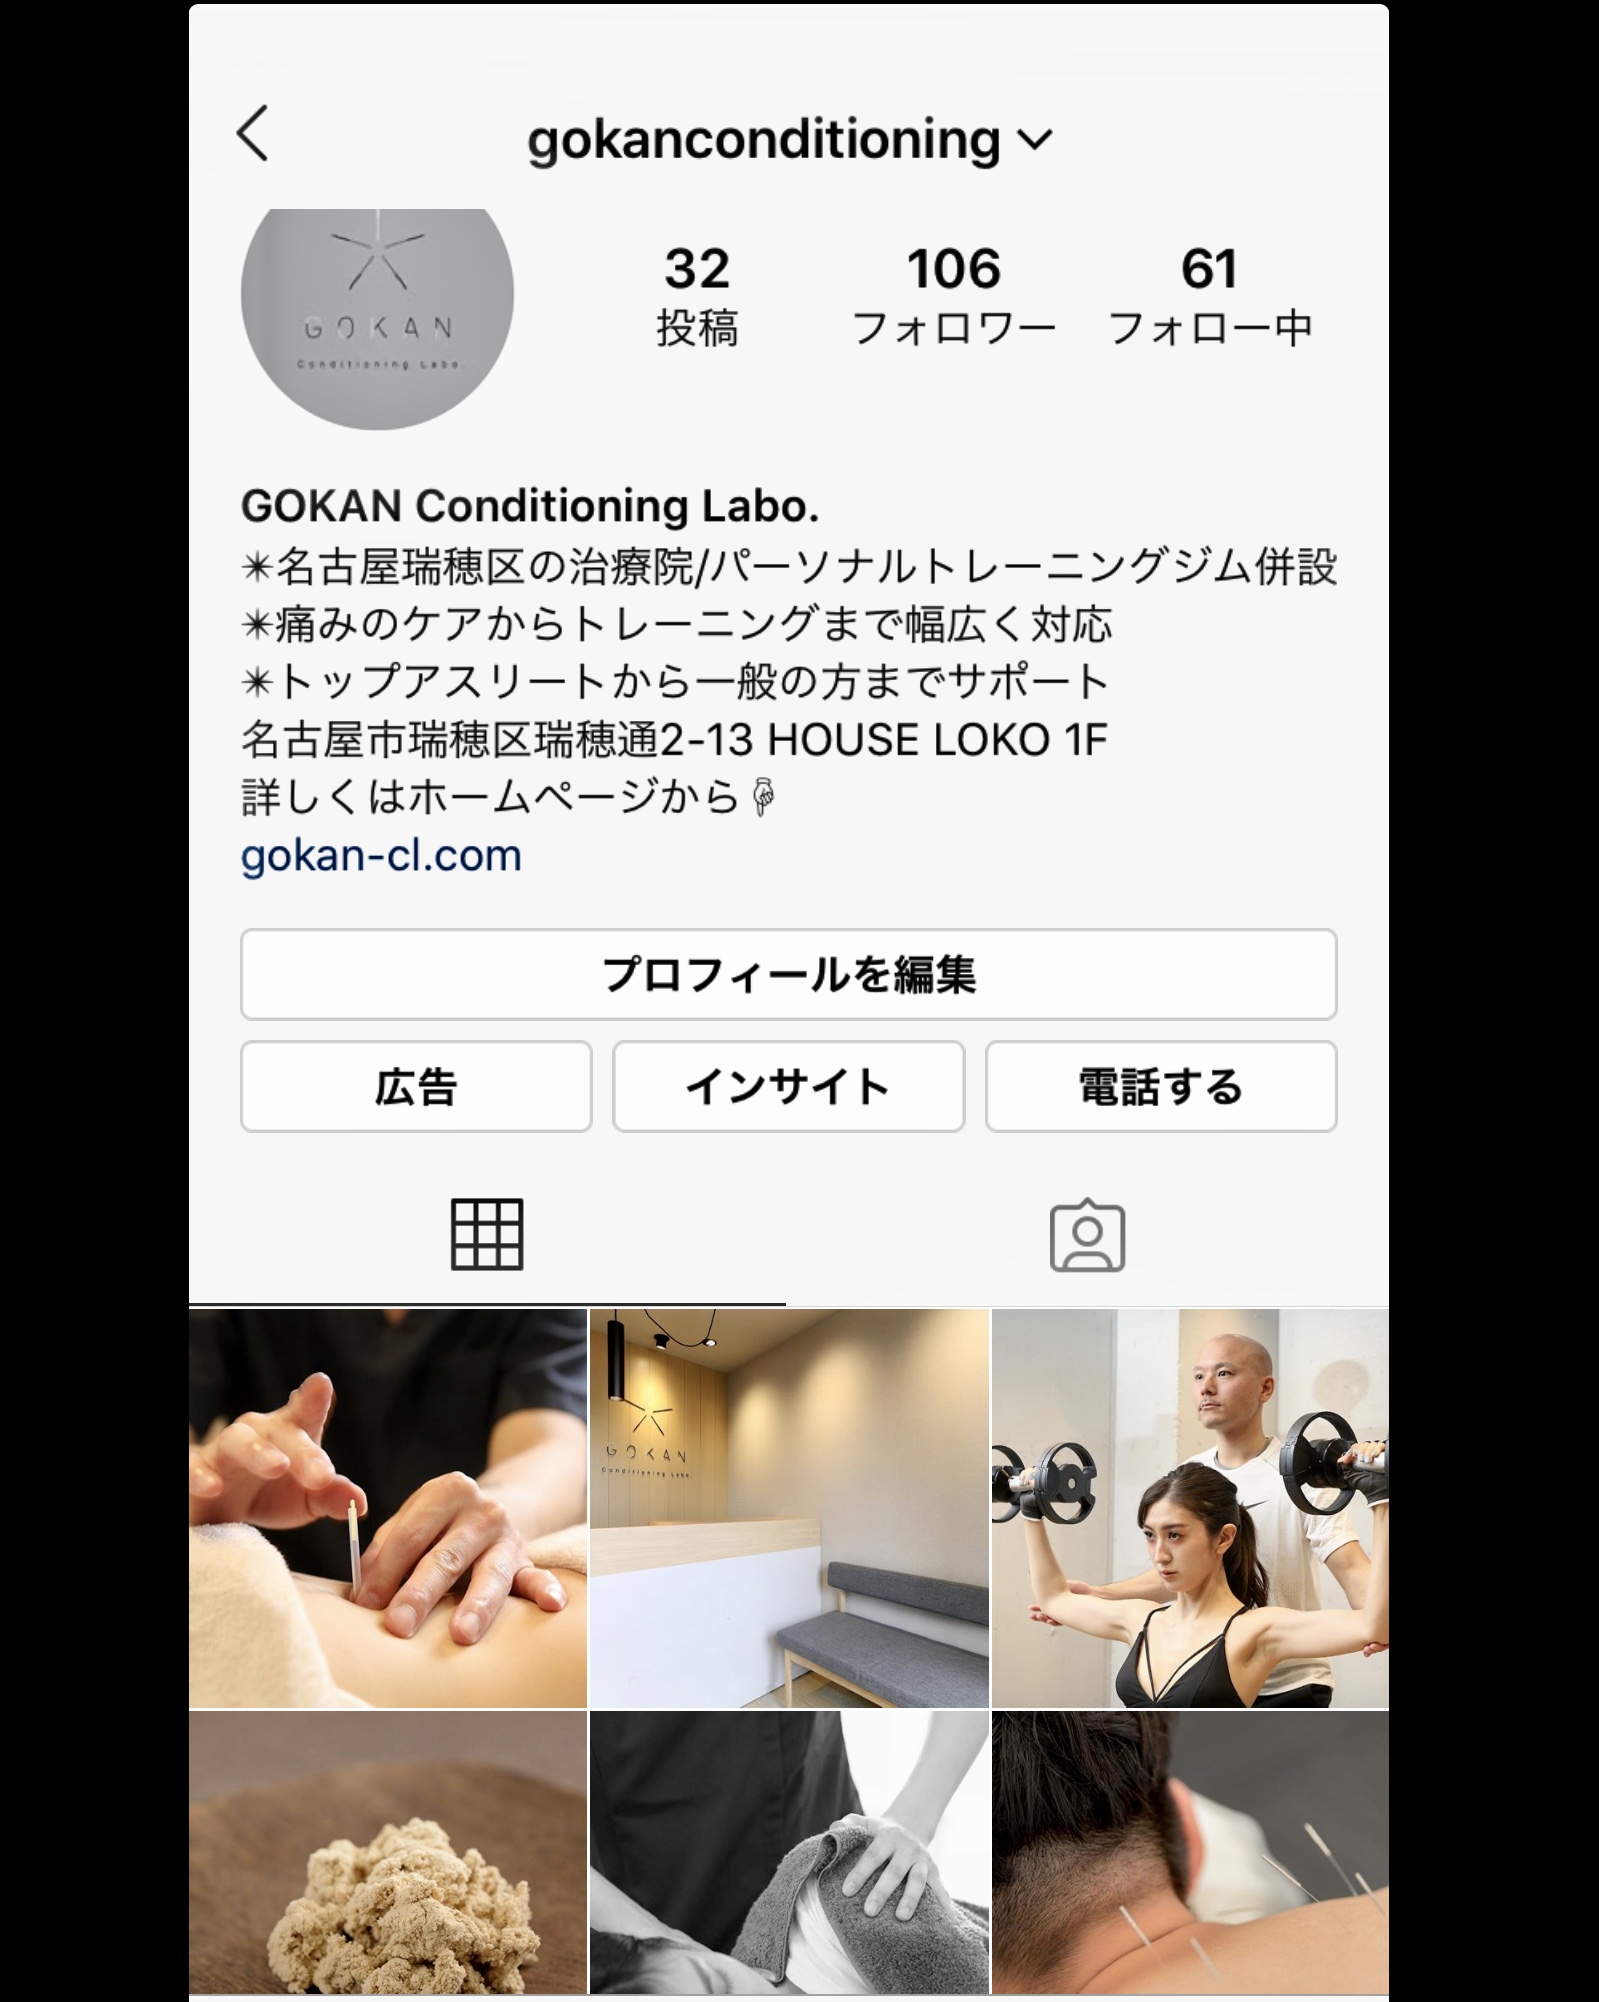 インスタグラム更新中です Gokan Conditioning Labo 名古屋市瑞穂区にある正しい感覚に導く鍼灸治療院 パーソナルトレーニング